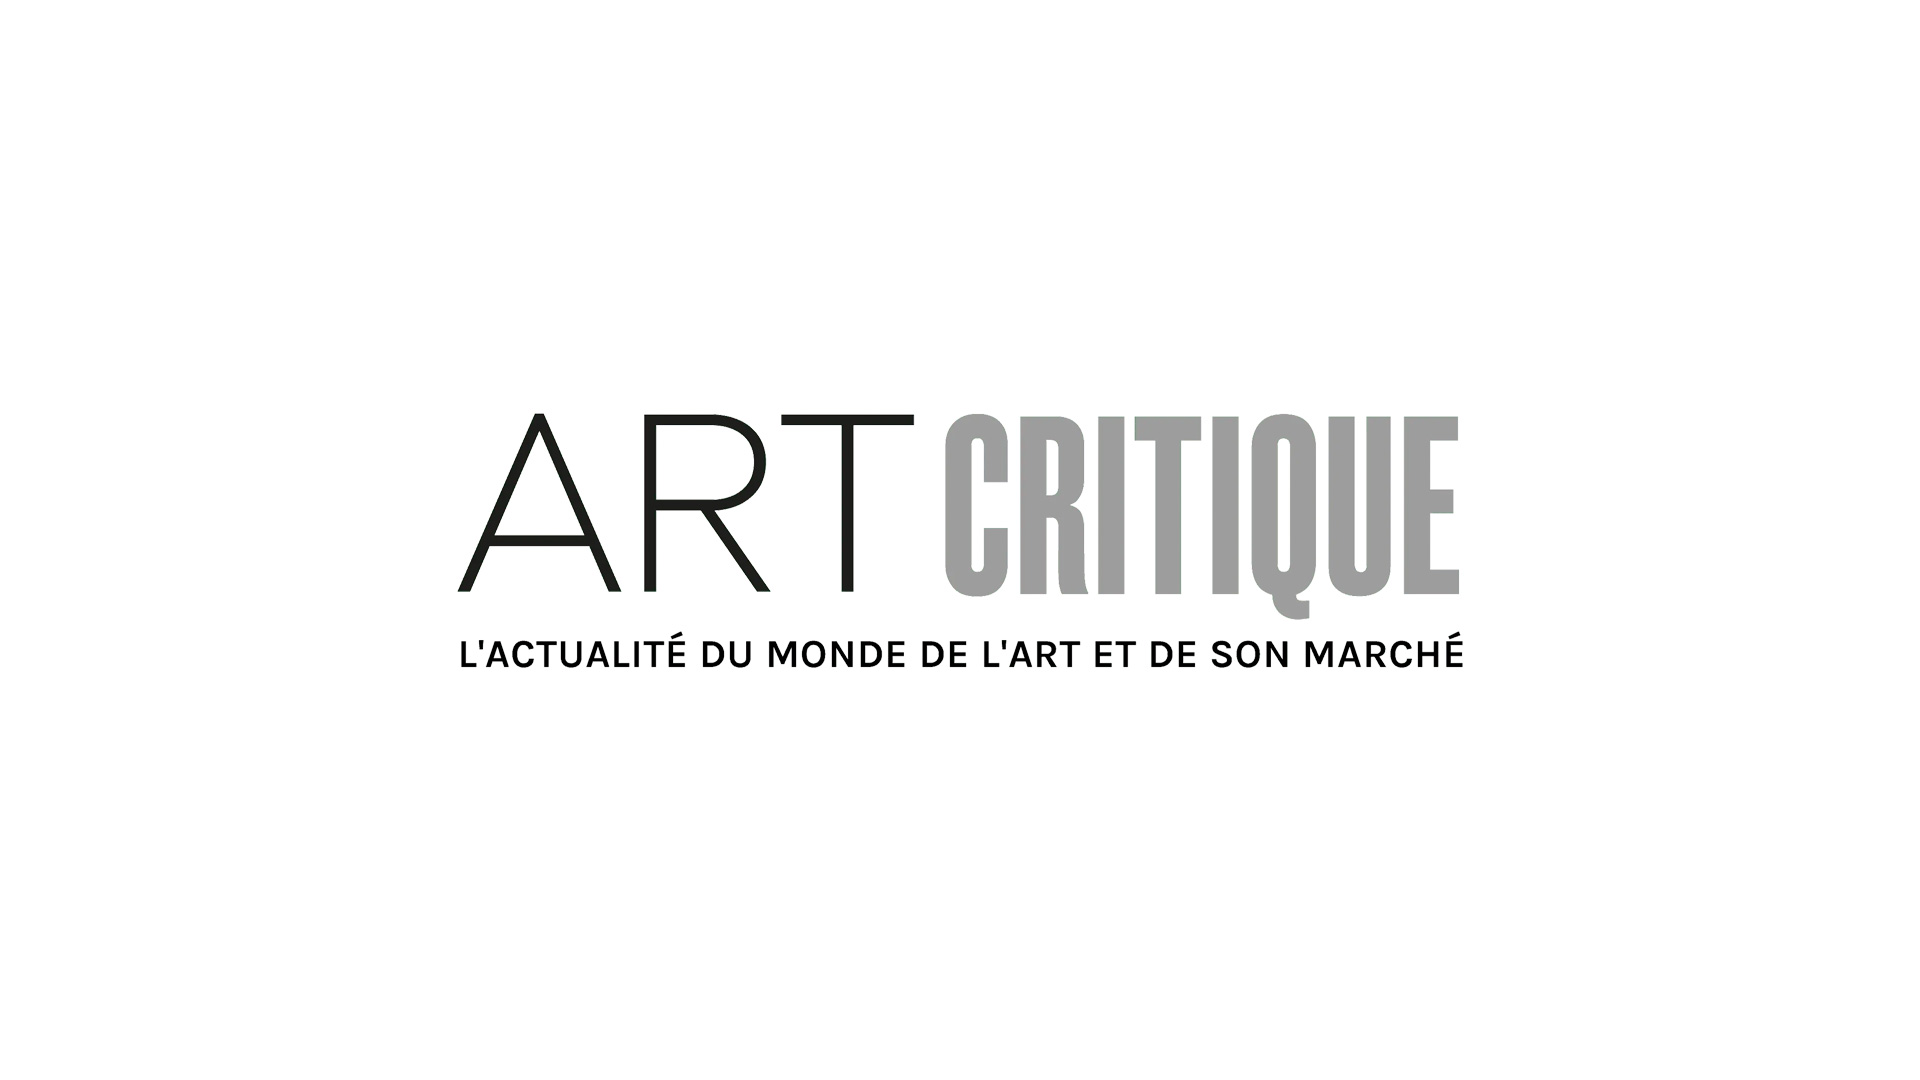 Charlélie Couture rend hommage à Arthur Rimbaud